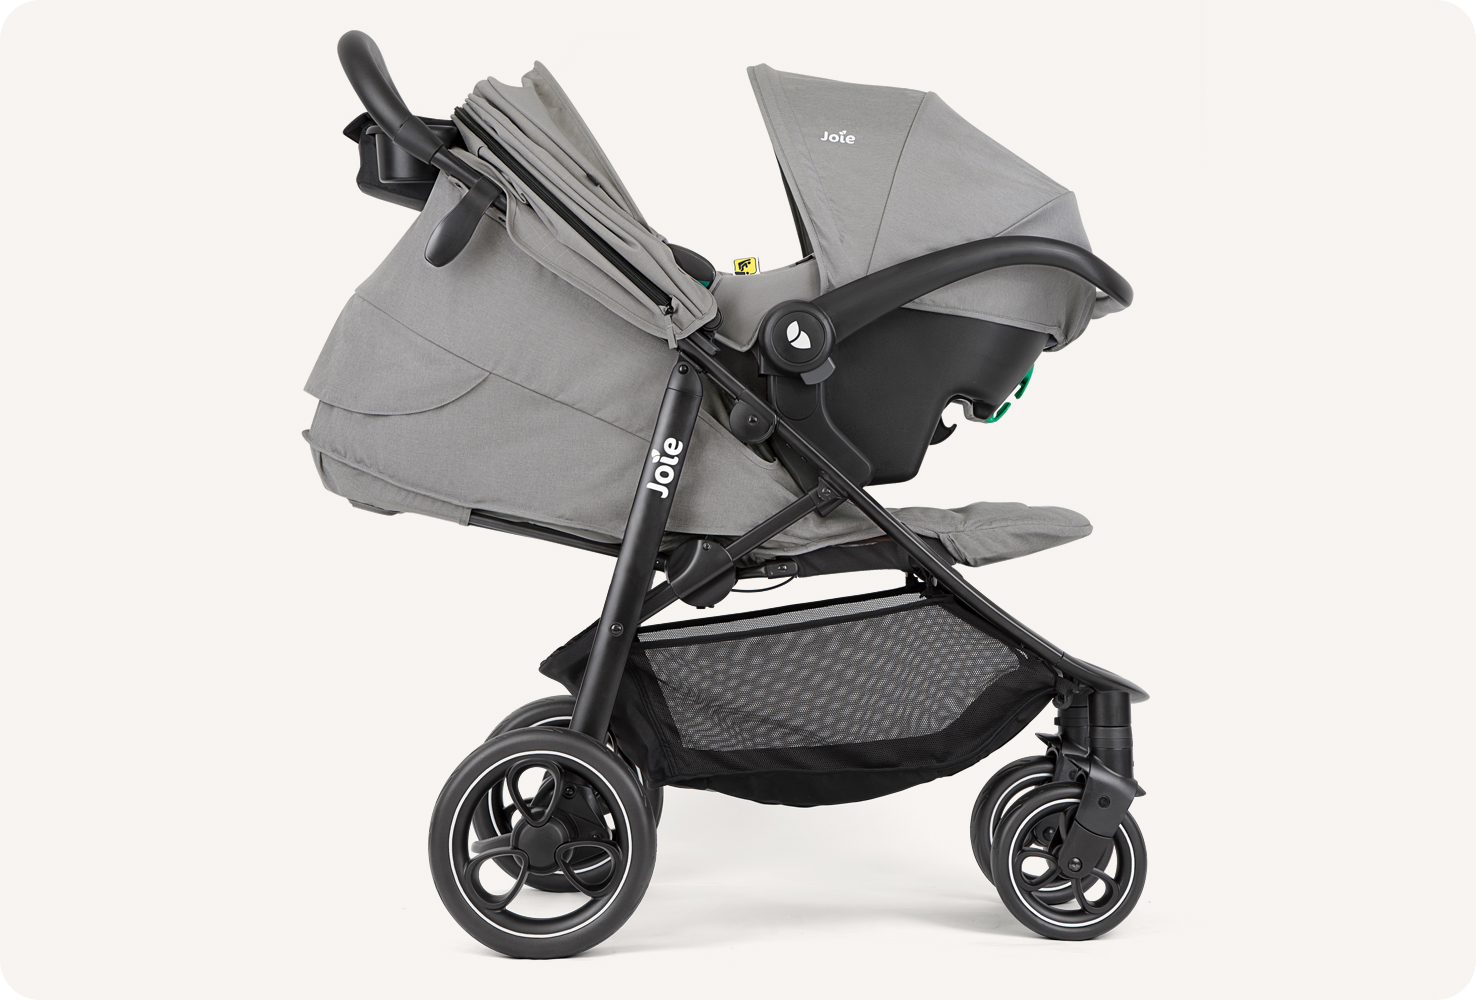   JoIe gray litetrax stroller with infant carrier. Joie litetrax 4 Kinderwagen in grau mit aufgesetzter Babyschale nach rechts.